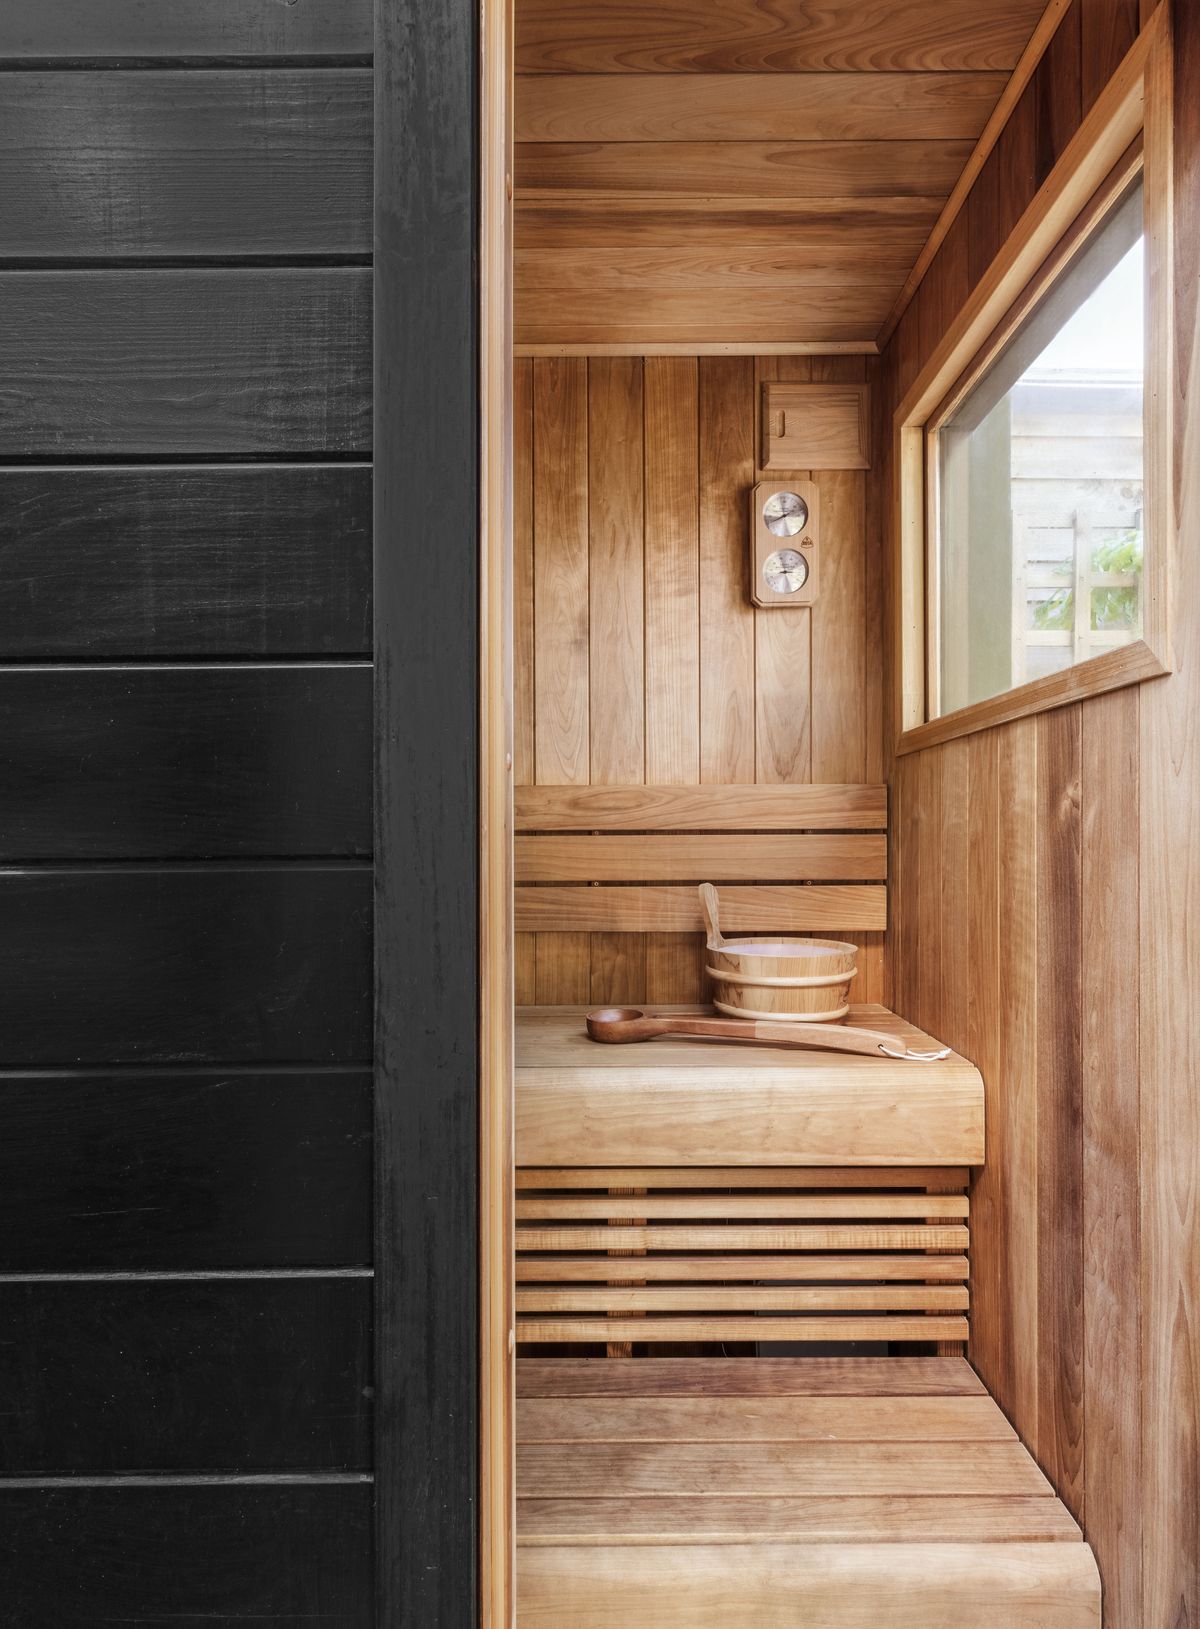 Esitellä 34+ imagen sauna in bathroom ideas